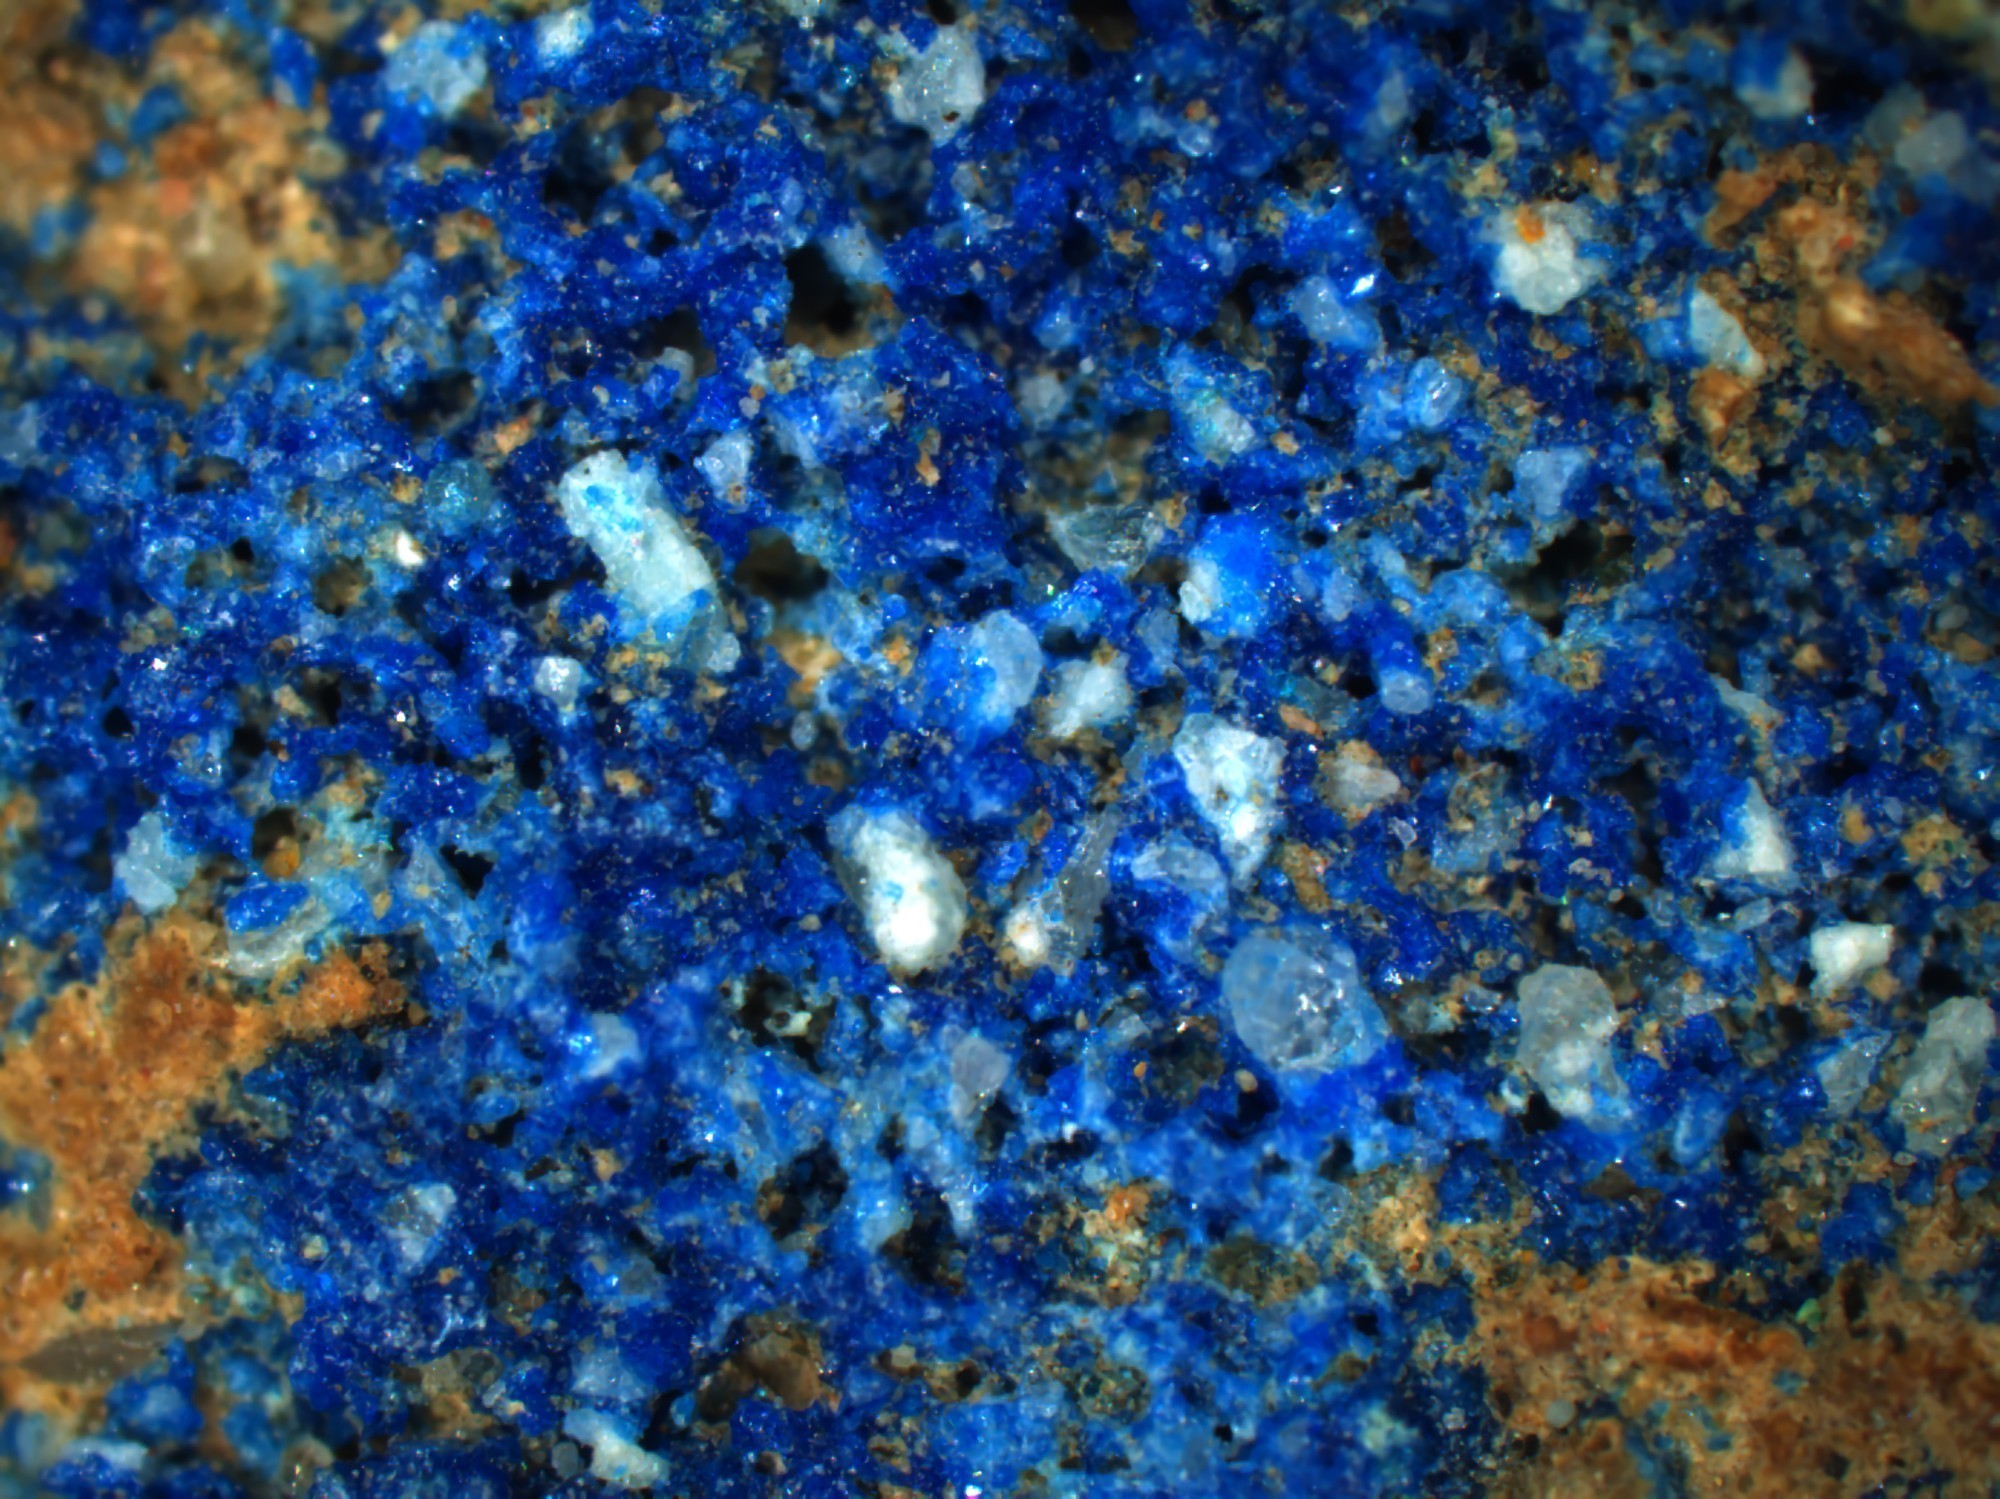 Image microscopique d'une sphère pigmentaire d'Augusta Raurica, réalisée dans le cadre du projet de recherche «Composants à l'état de traces dans le bleu égyptien».